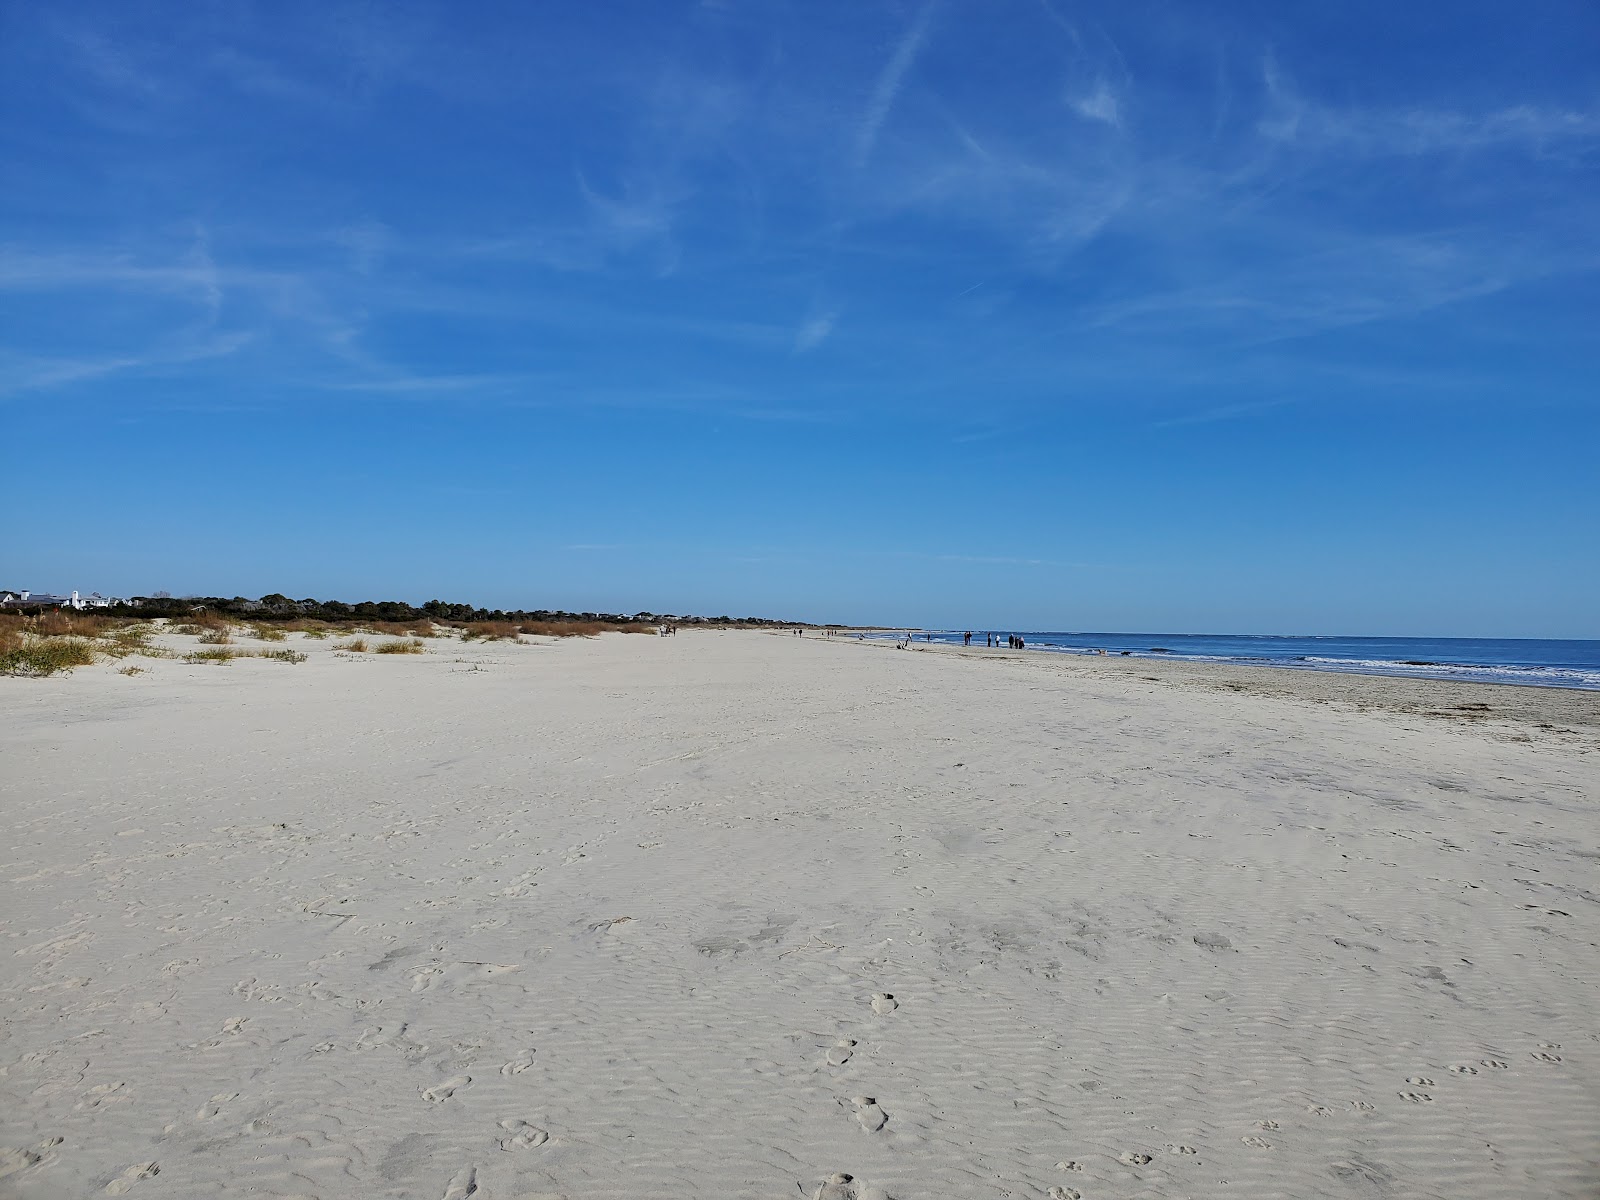 Sullivan's Island beach的照片 带有明亮的沙子表面